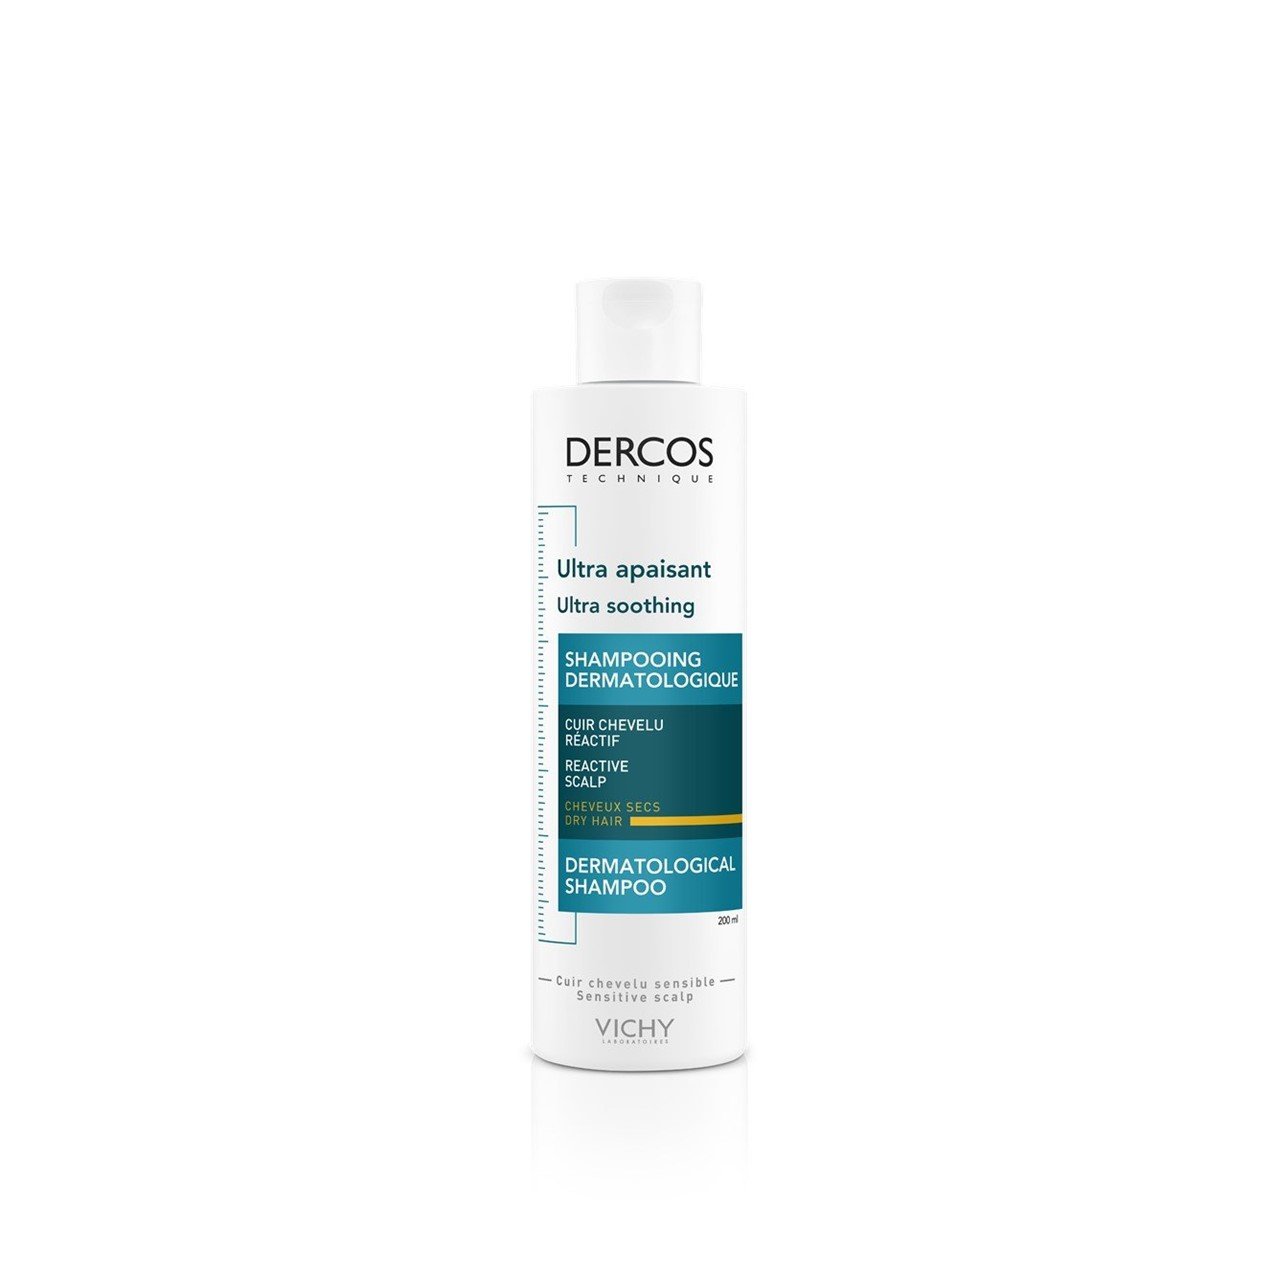 Dercos Ultra-Soothing Shampoo Dry Hair 200ml (6.76fl oz) ·